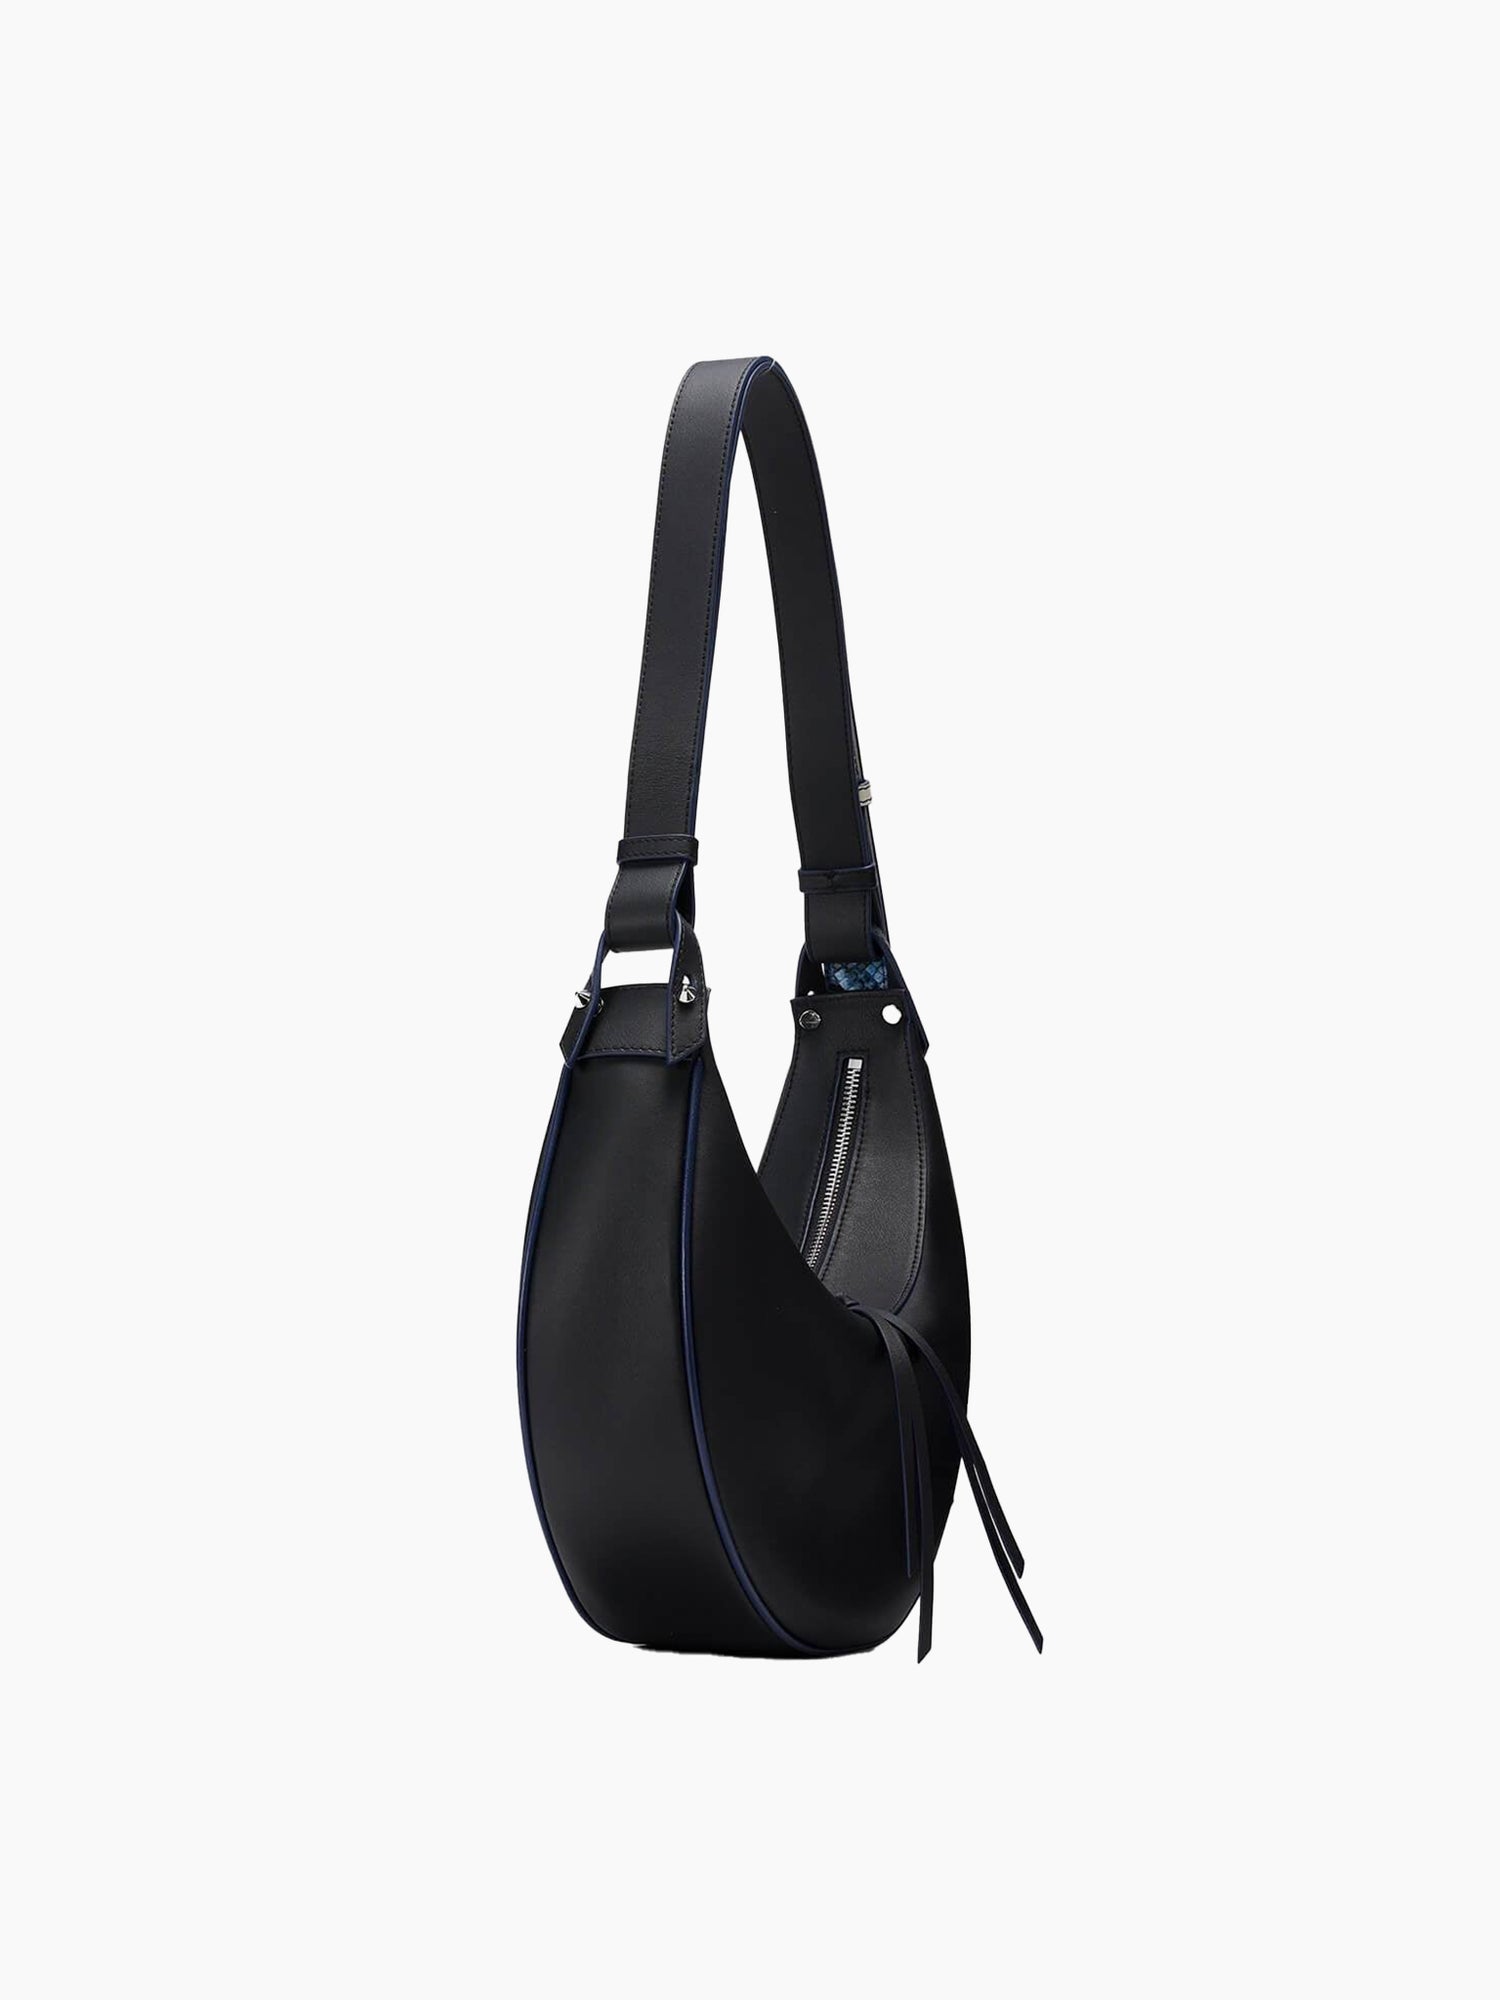 Korean Famous Selene Hobo Bag Brand, Selene hobobag_big modern bag, Handbags